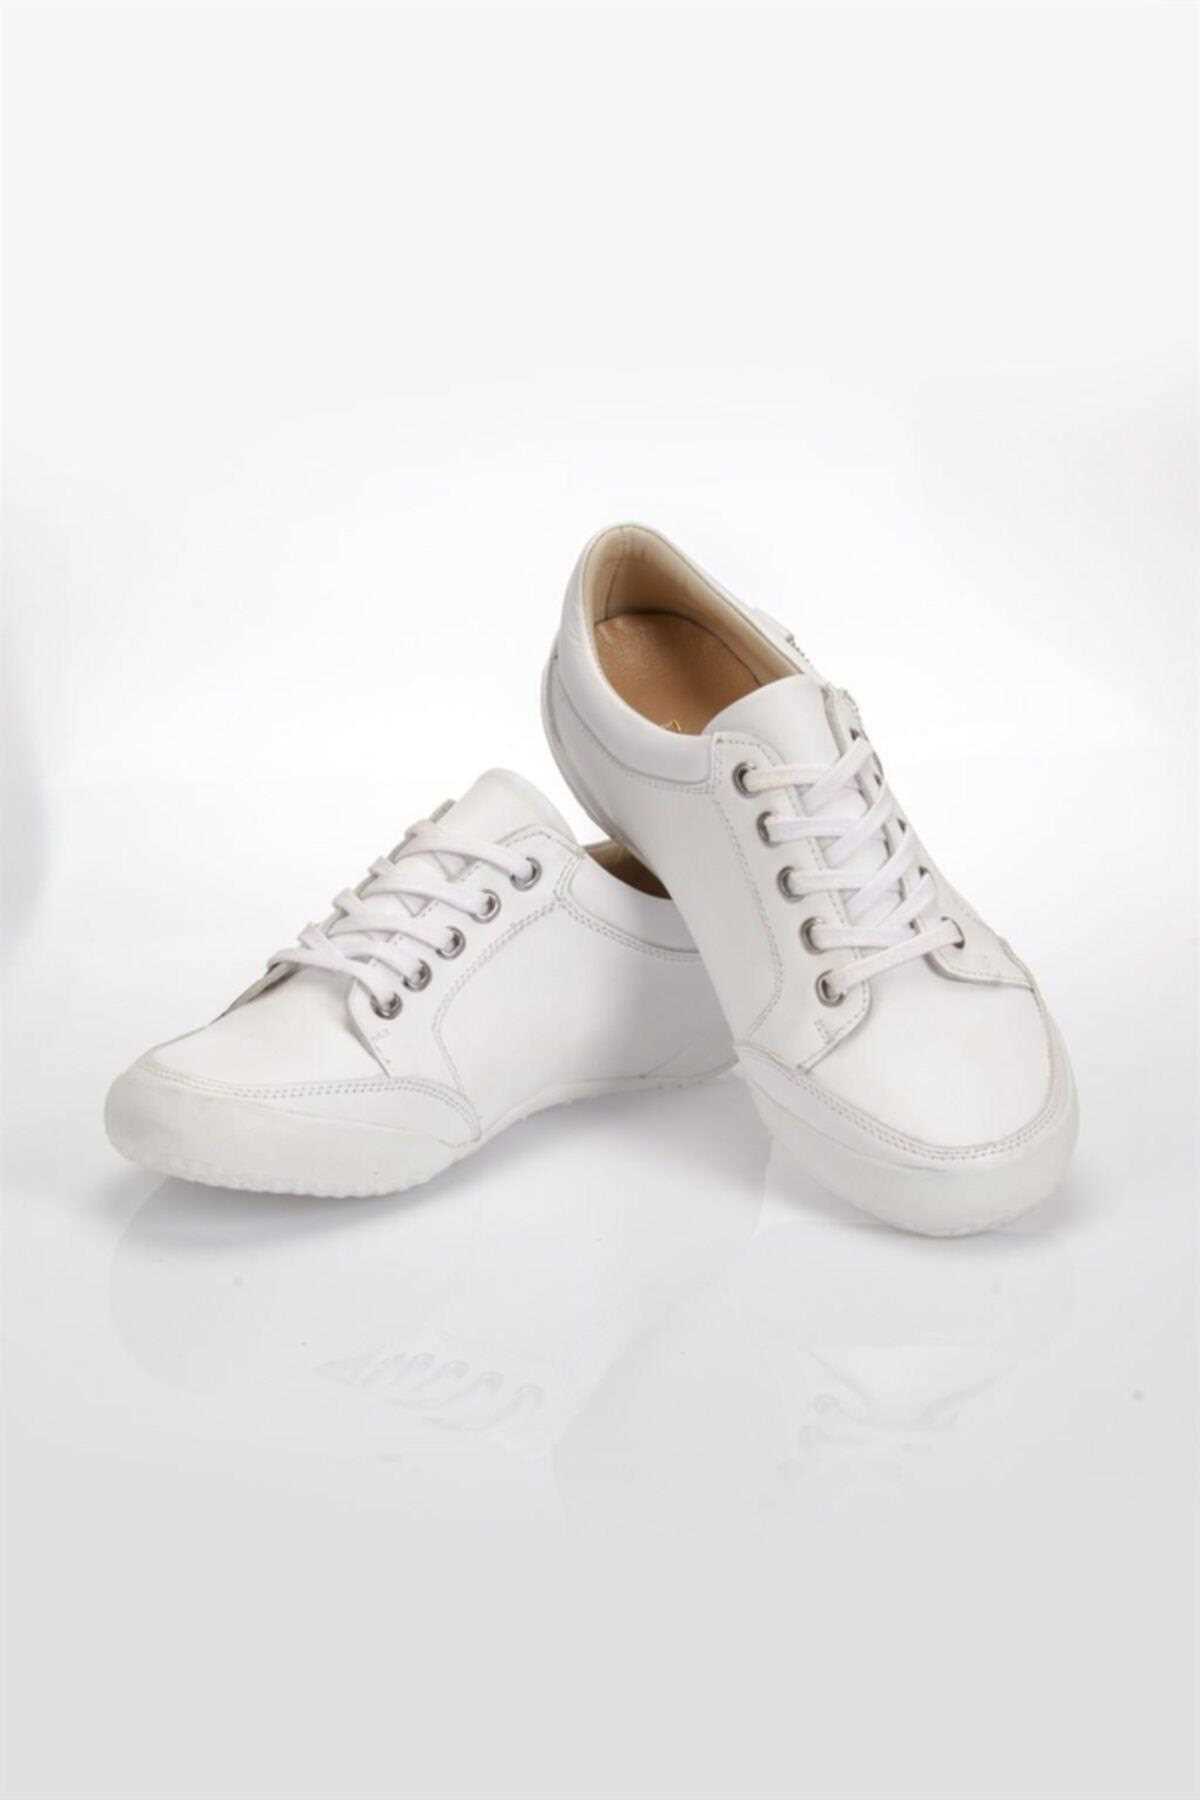 خرید پستی کفش روزمره زنانه شیک برند Deripabuc رنگ سفید ty457706